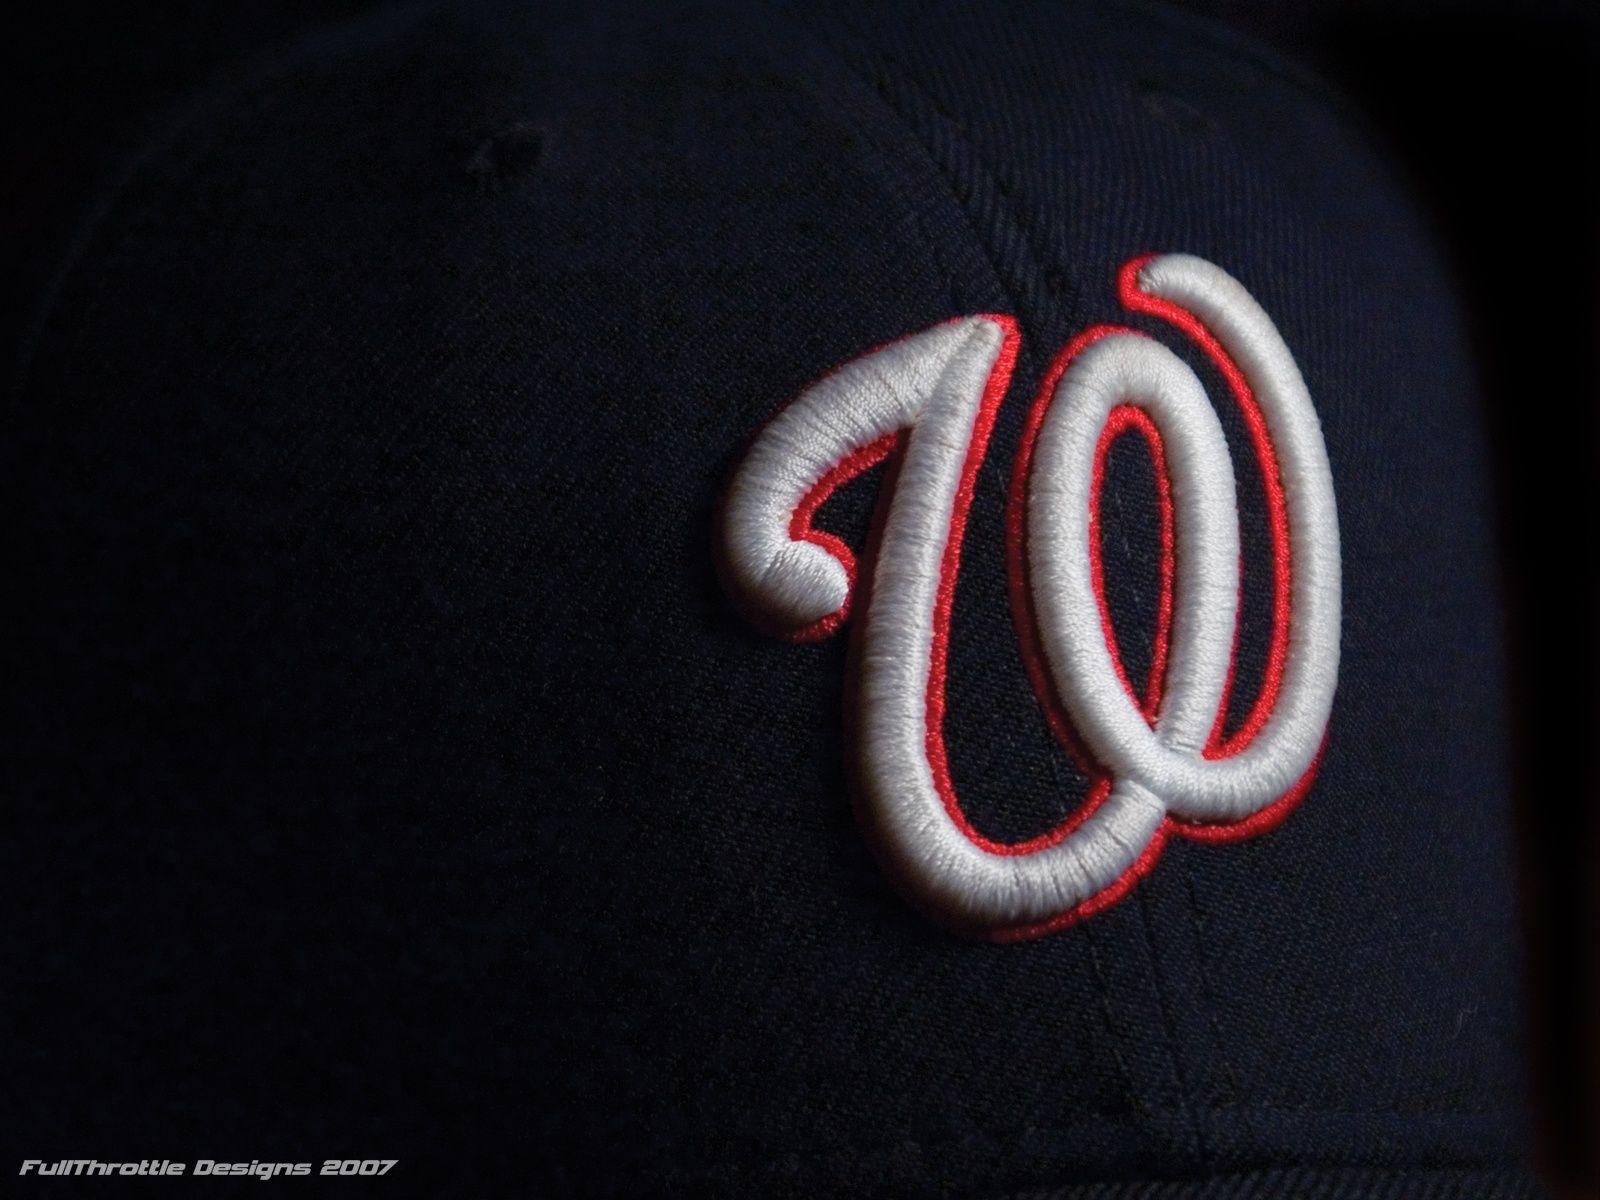 WASHINGTON NATIONALS mlb baseball (2) wallpaper, 2048x1280, 229447